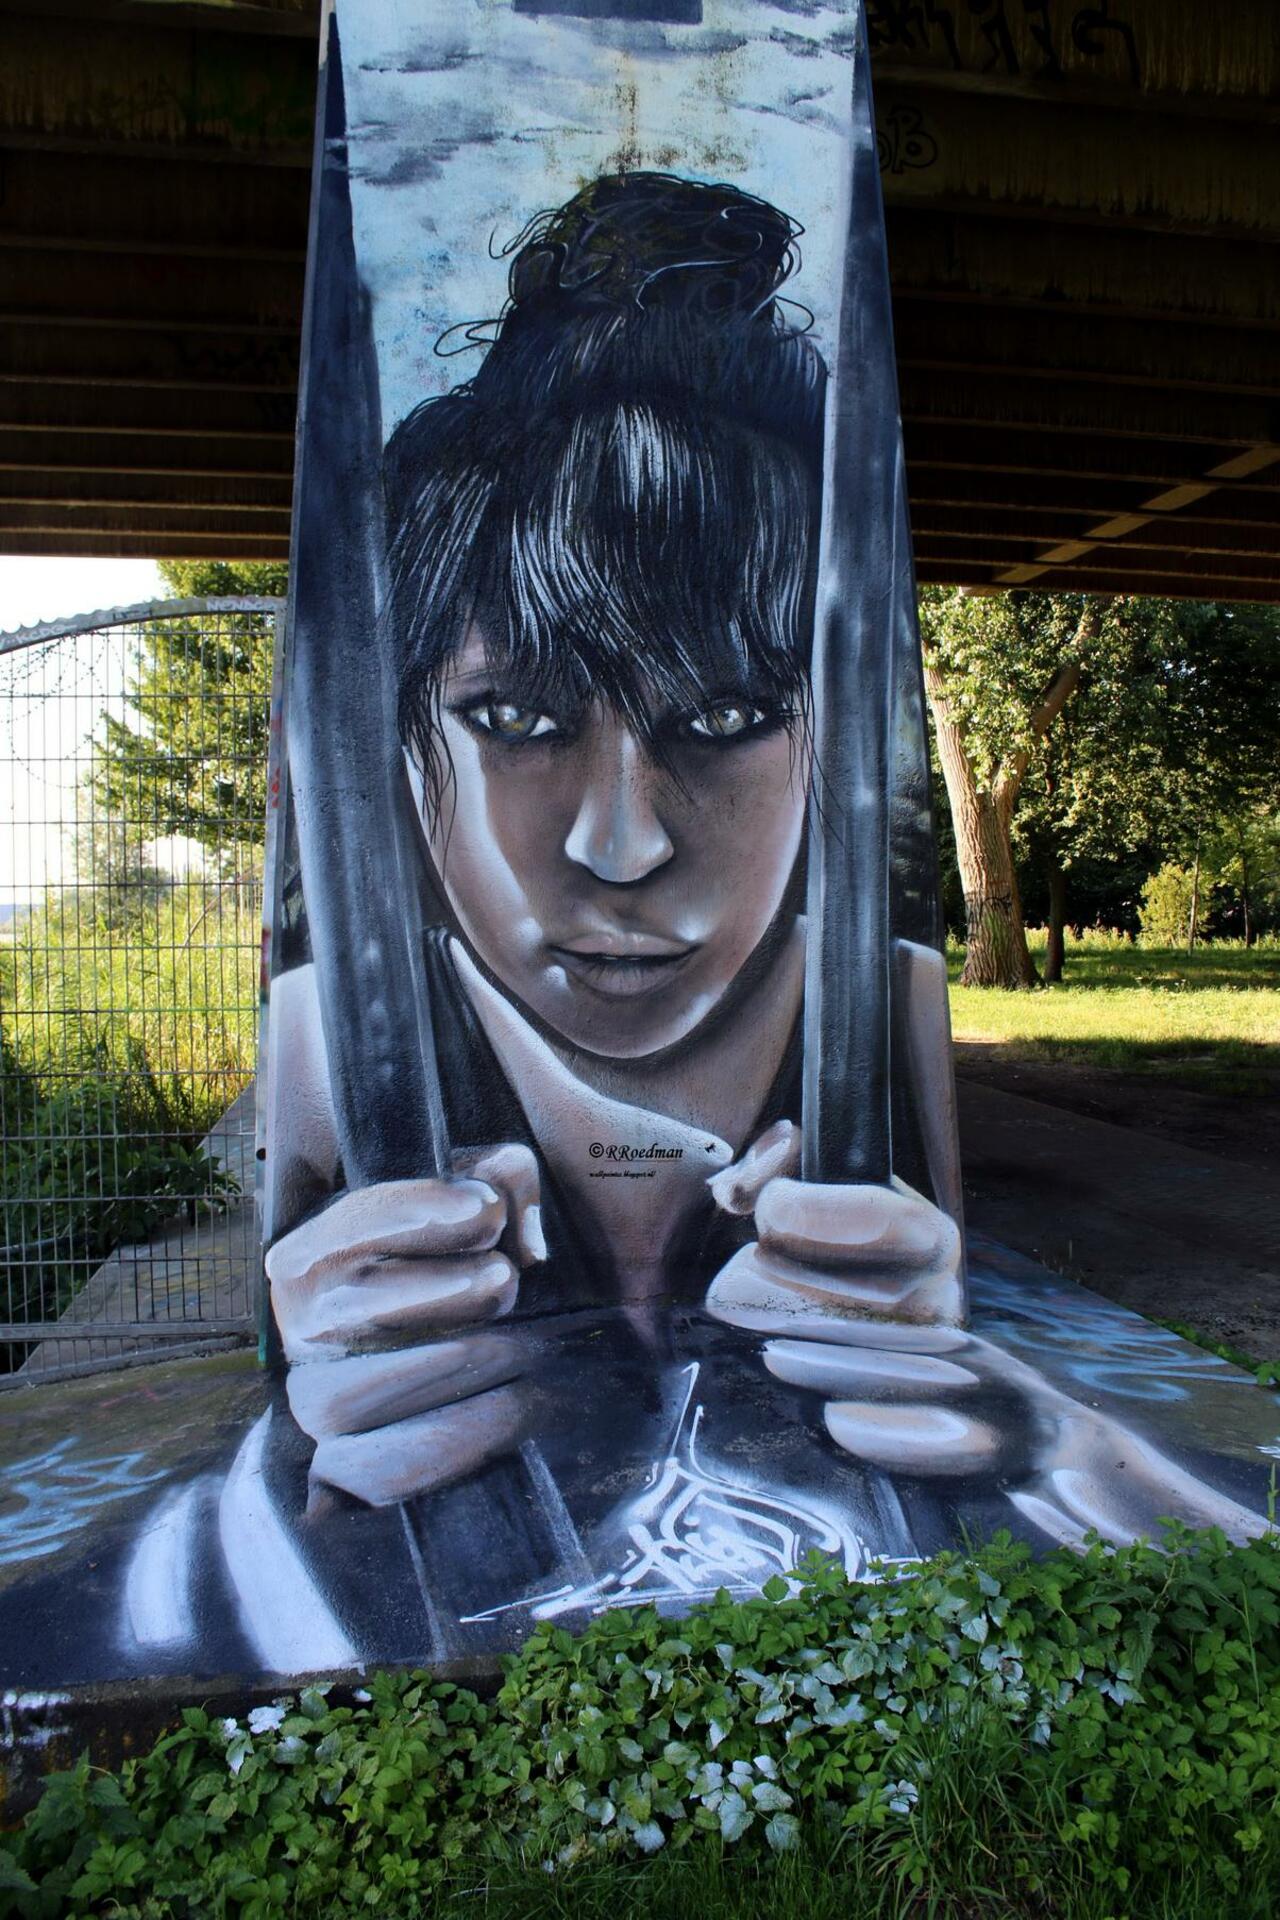 RT @RRoedman: #streetart #graffiti #mural girl behind bars in #Amsterdam ,2 pics at http://wallpaintss.blogspot.nl http://t.co/q8lVBh7zer